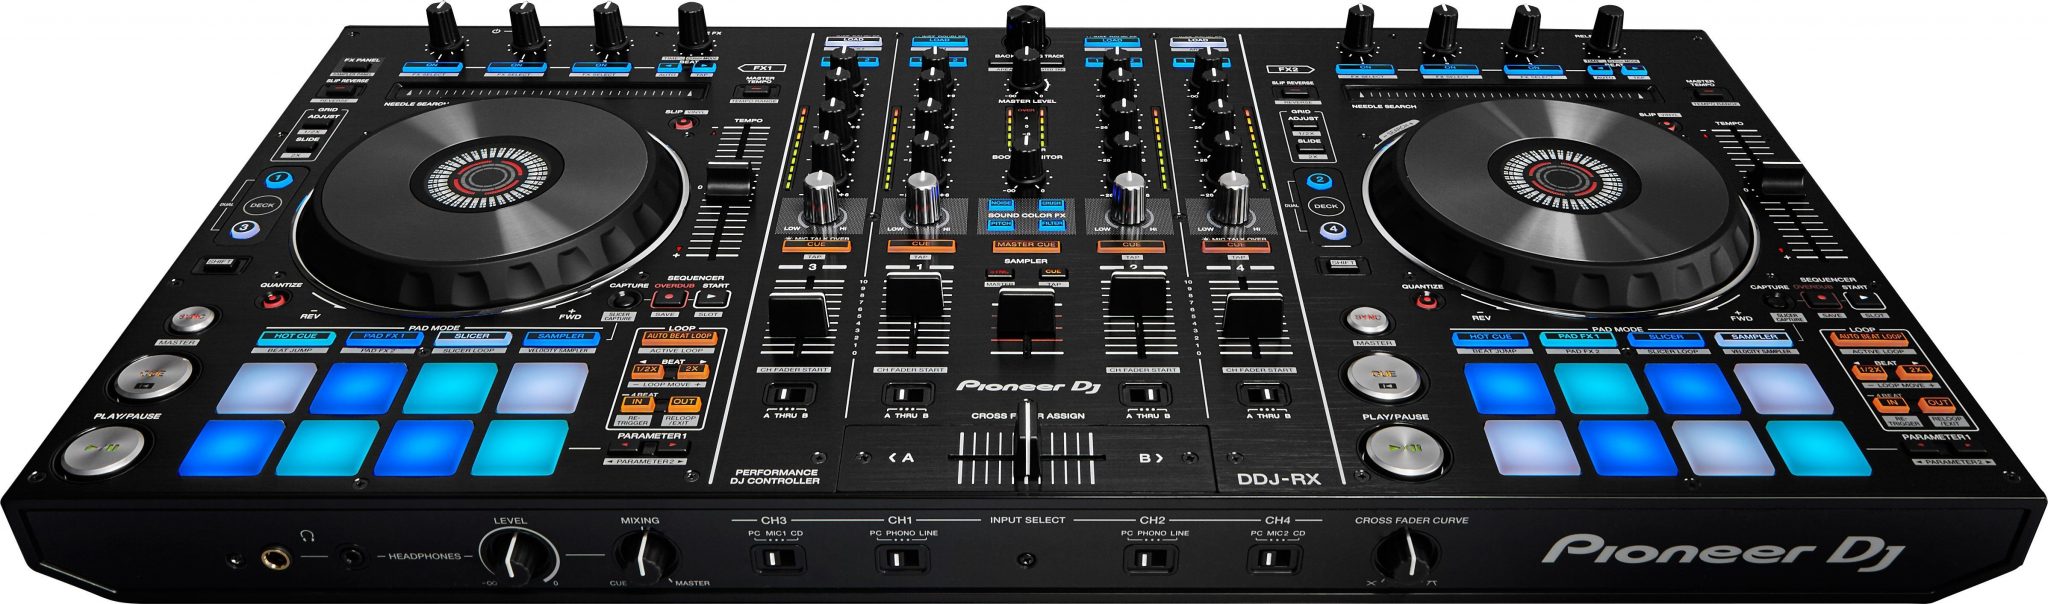 Pioneer DJ DDJ-RX and DDJ-RZ rekordbox controllers • DJWORX